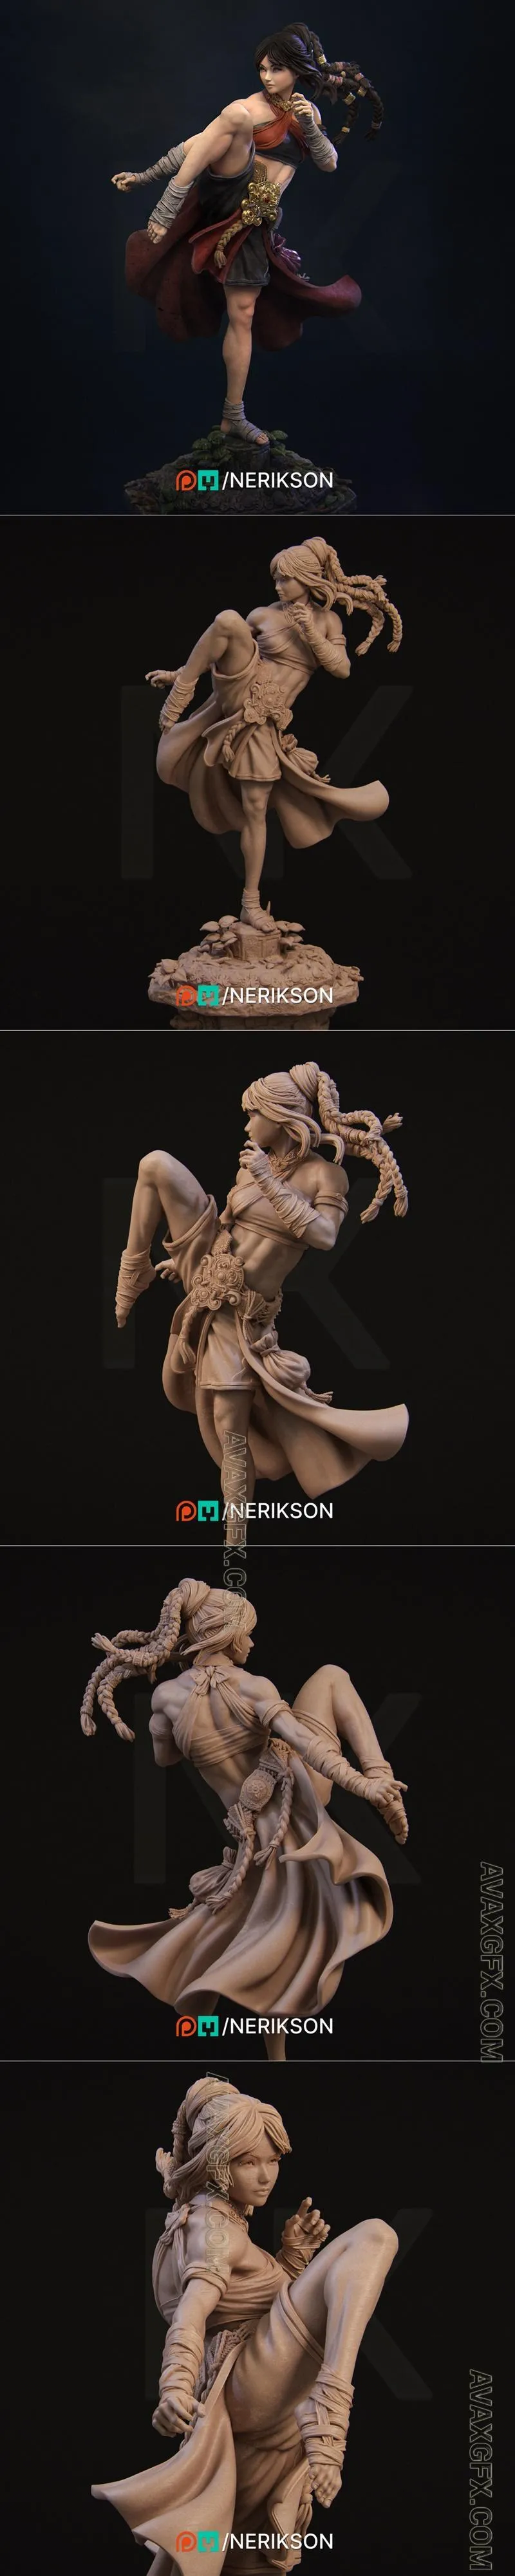 Nerikson - Jingwei the Monk Pose 01 - STL 3D Model